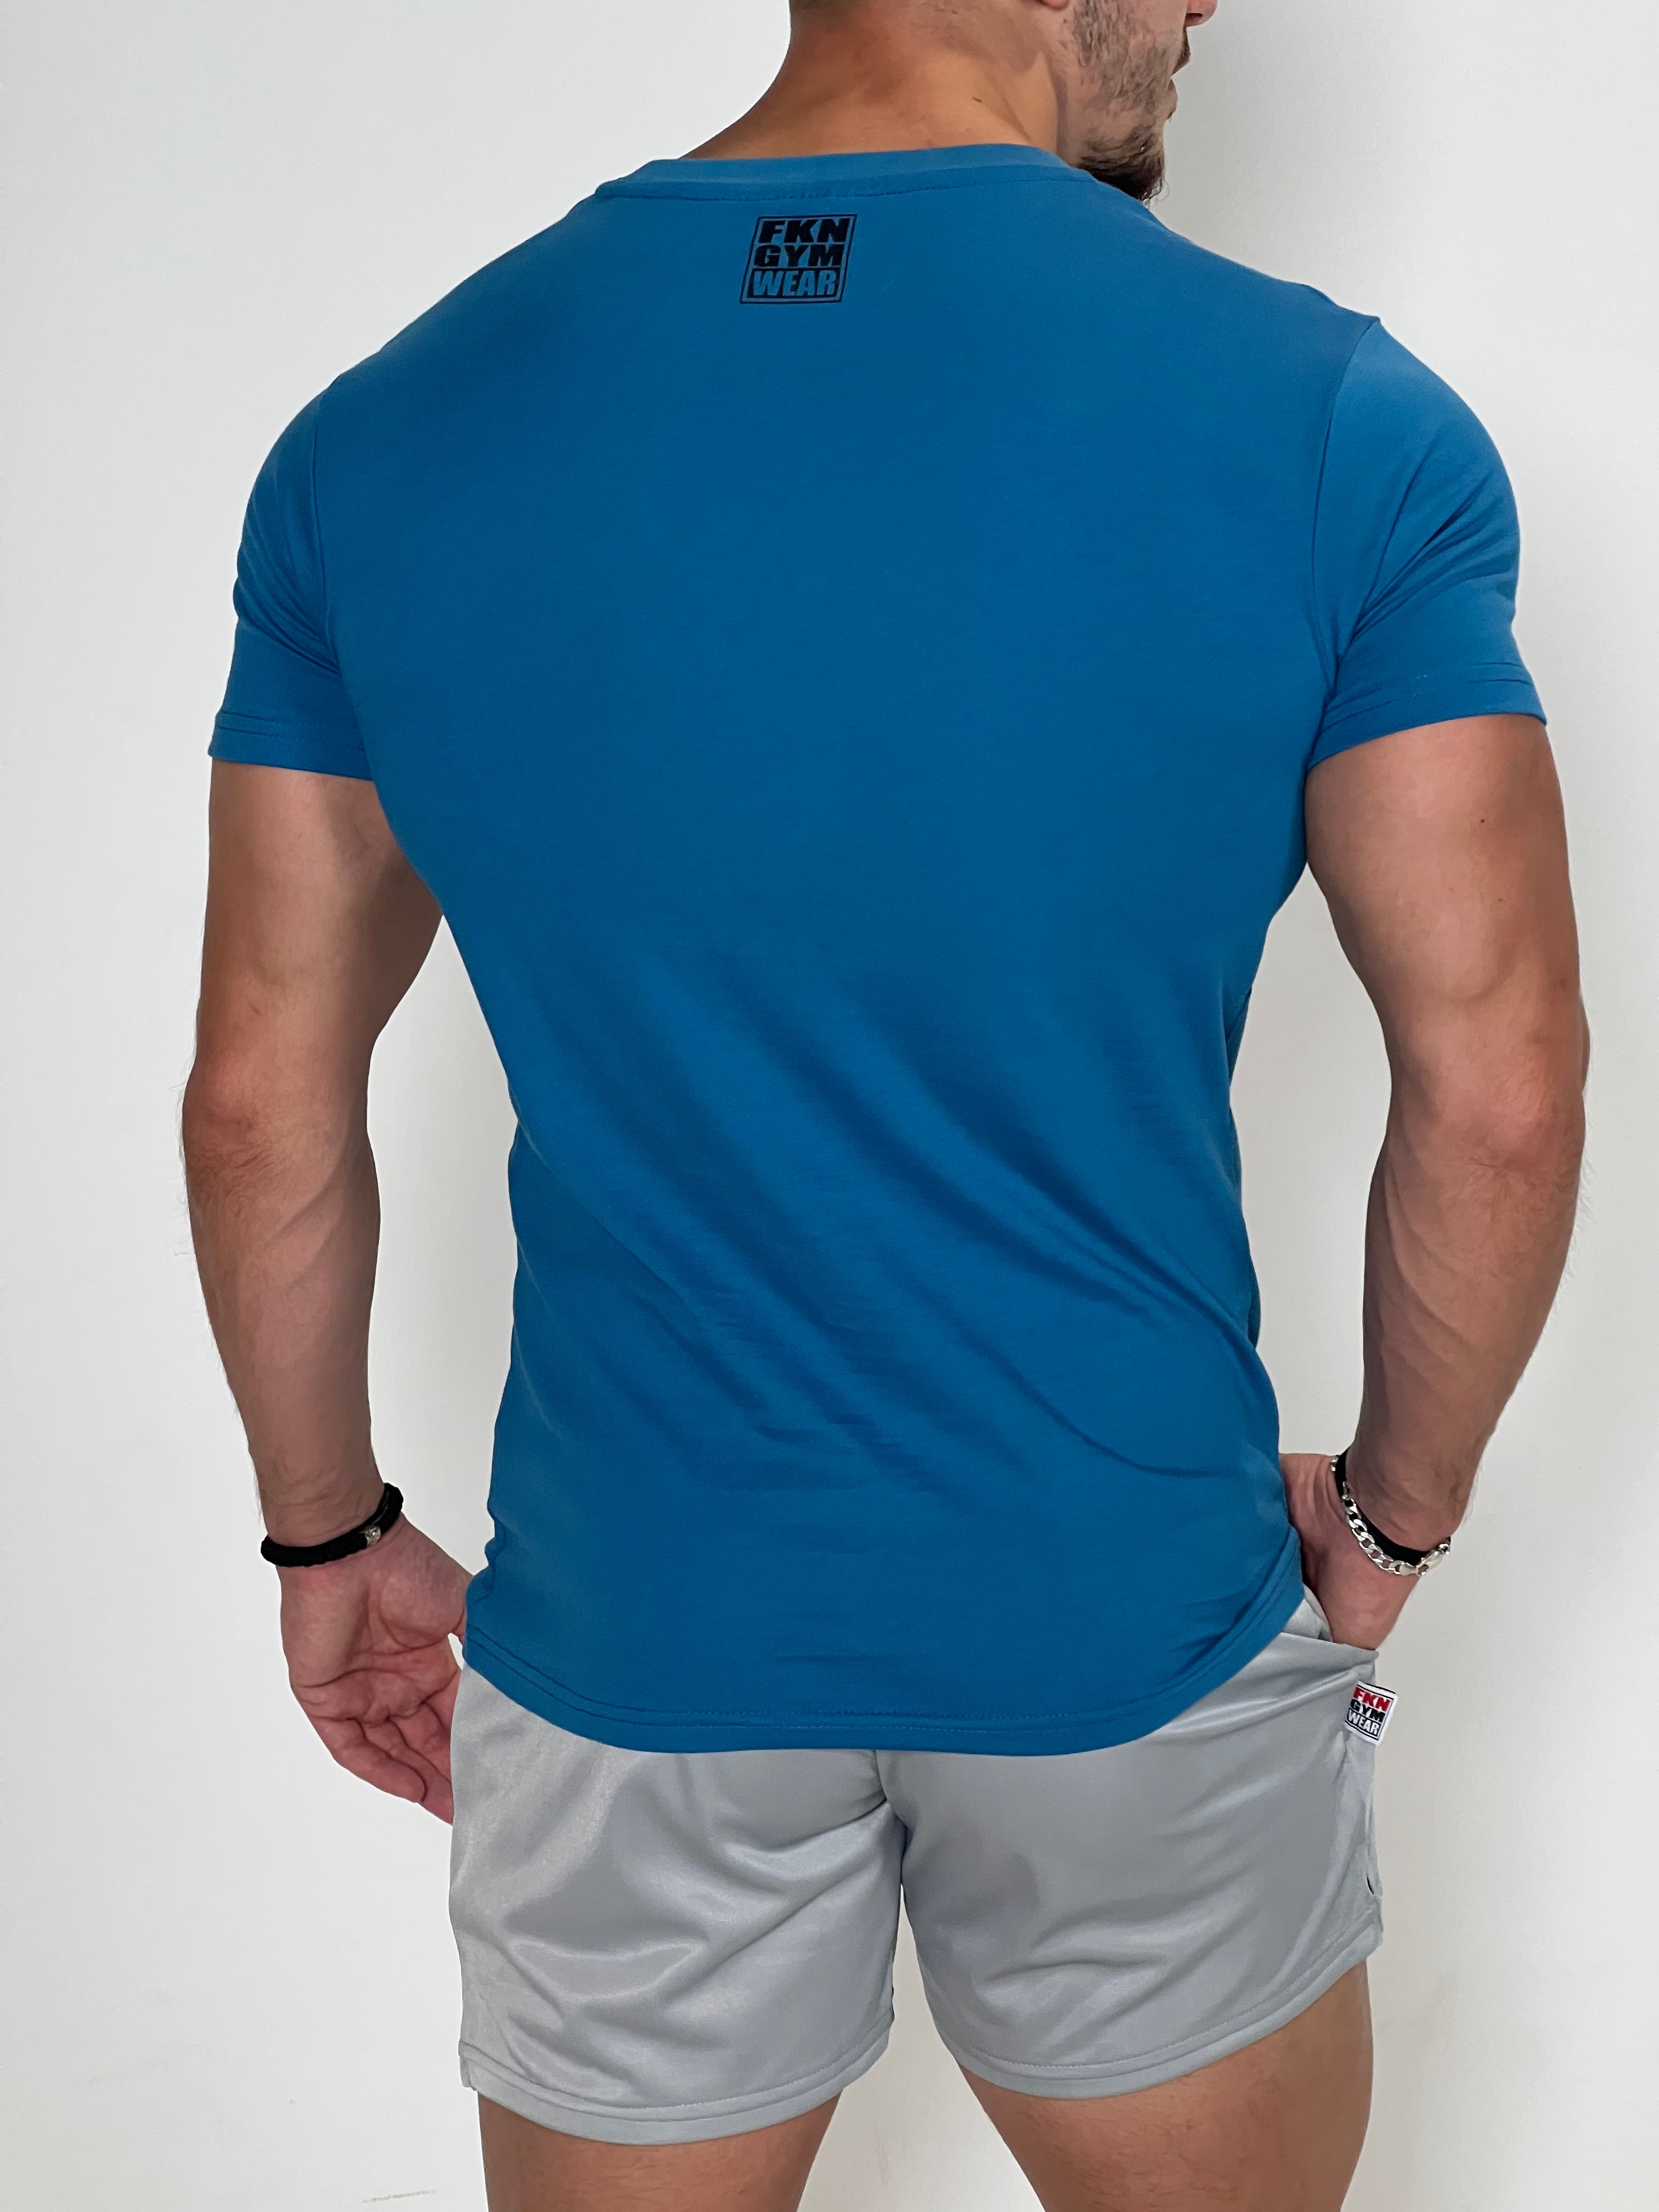 Men's Gym T-Shirt, Classic, Blue